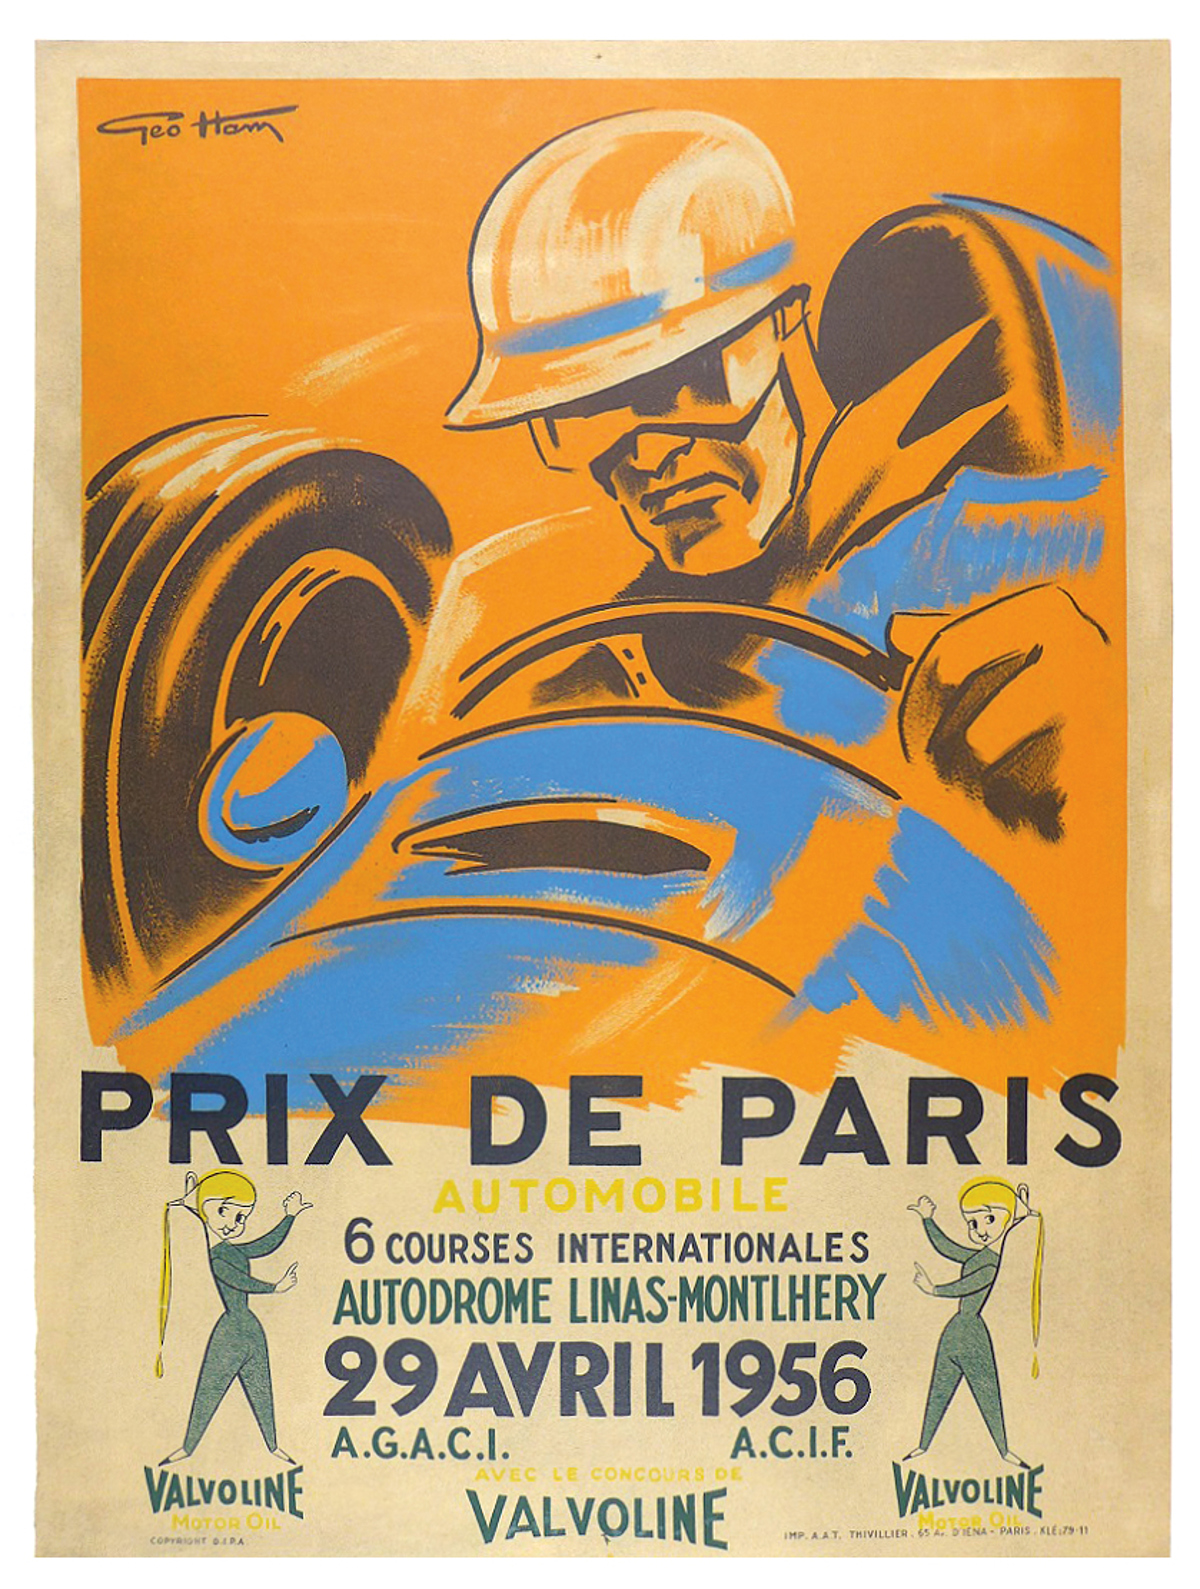 Prix de Paris Autodrome Linas-Montlhéry 1956 offered in RM Sotheby’s Original Racing Posters online auction